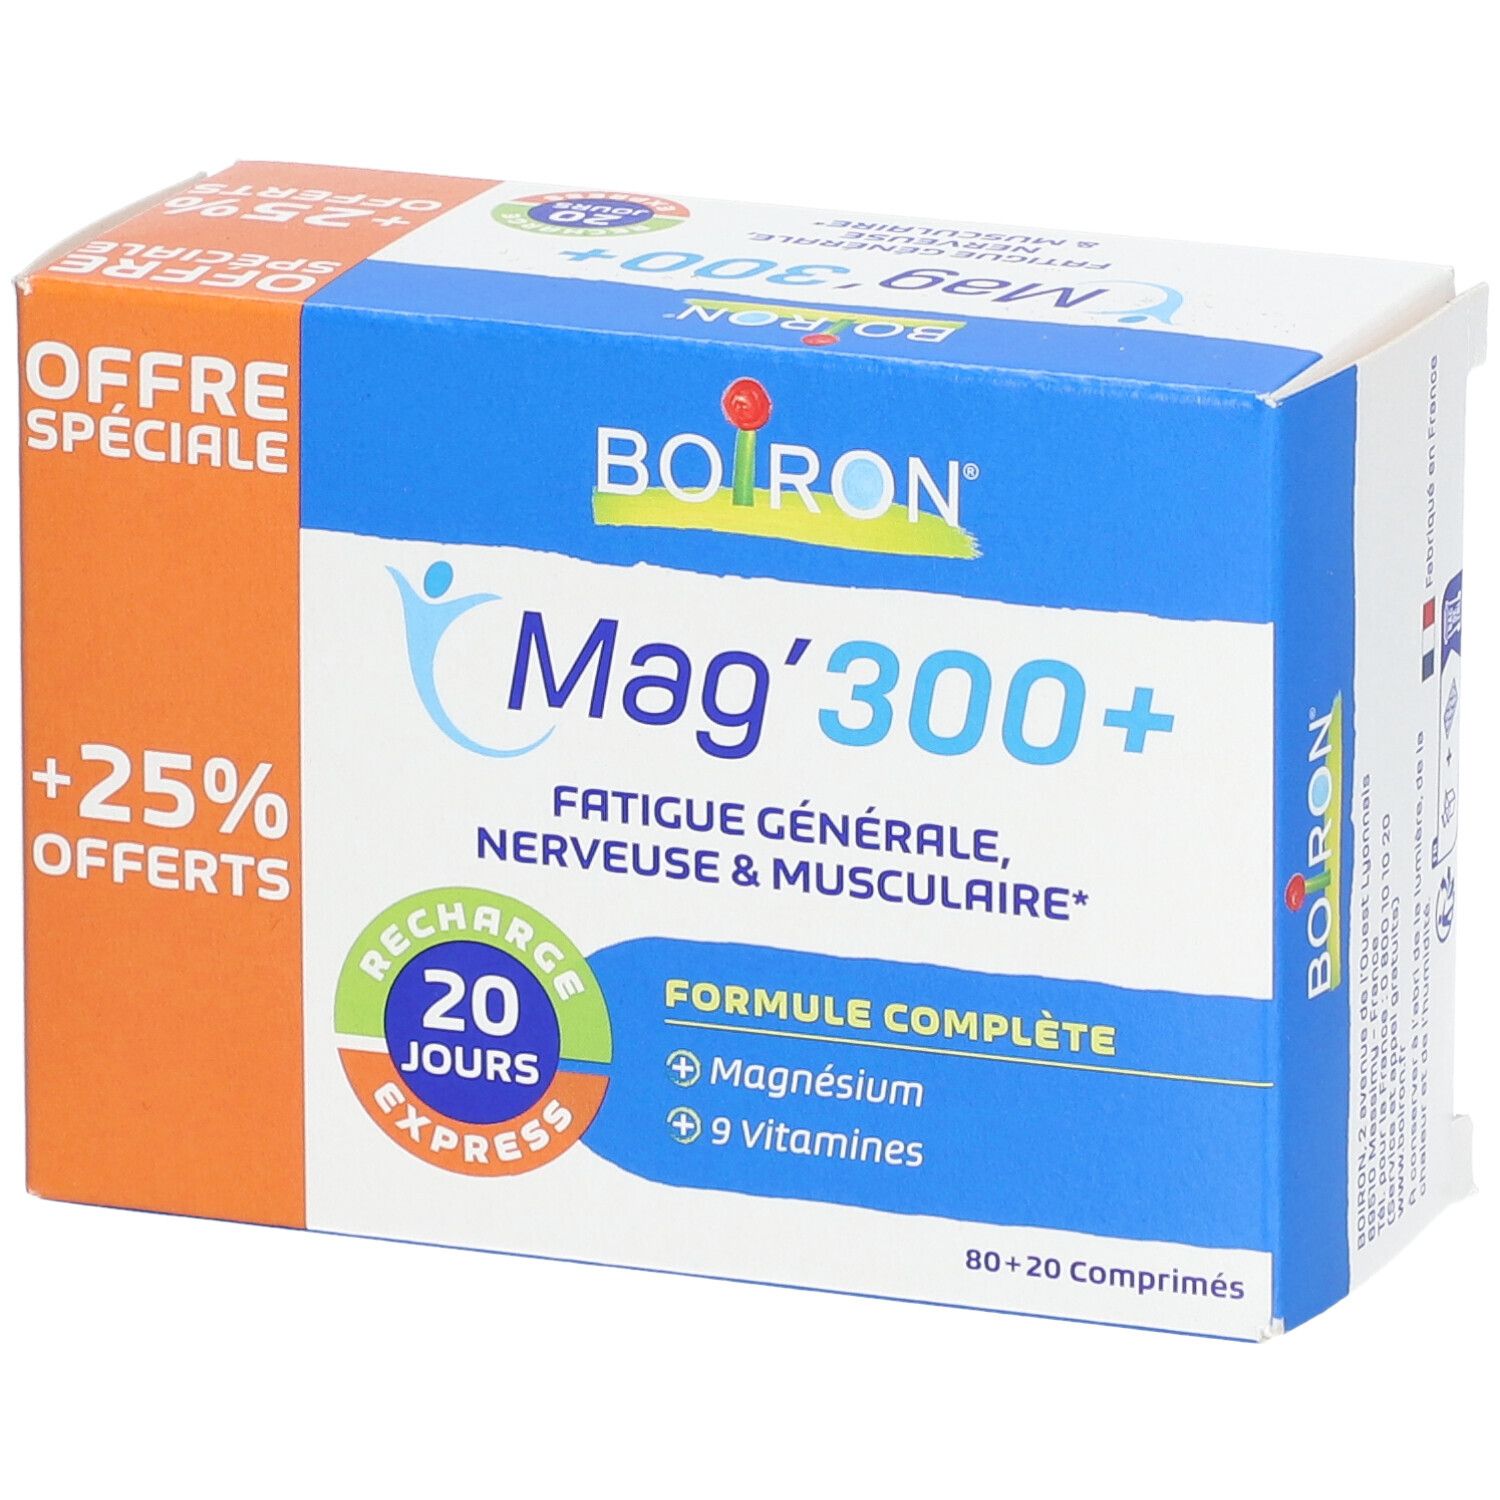 Boiron® Mag'300+